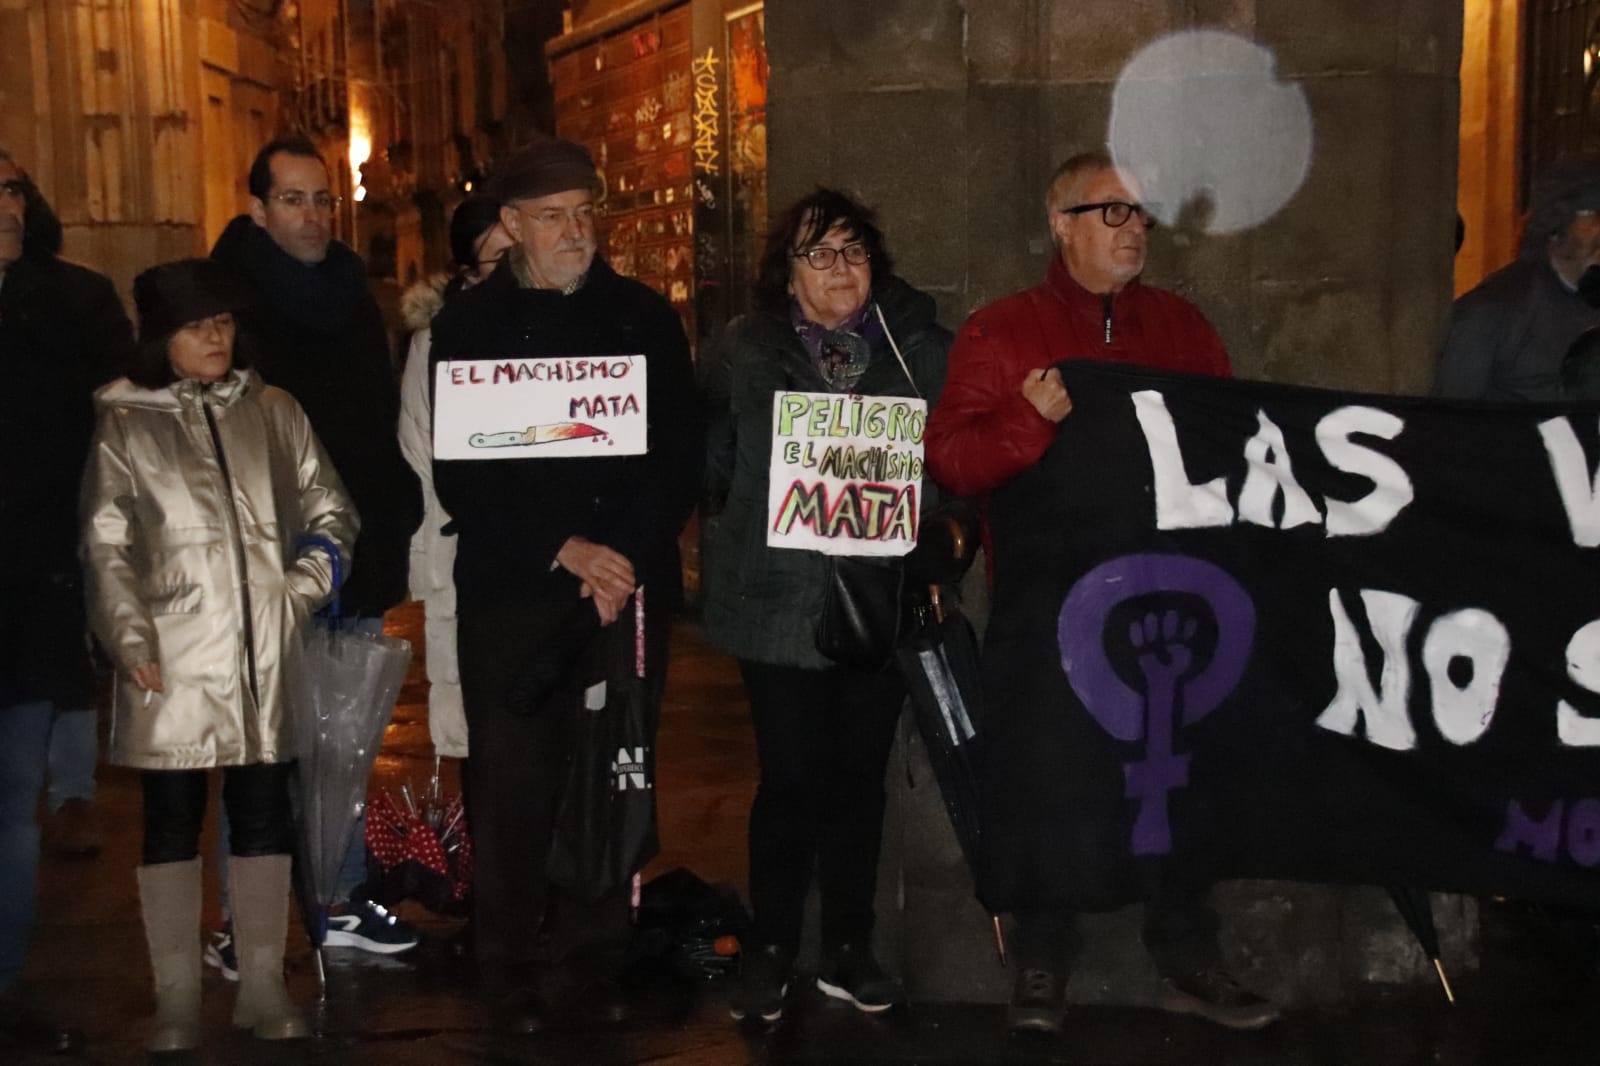 GALERÍA | Manifestación por el asesinato de Yess María Pérez en Santa Marta